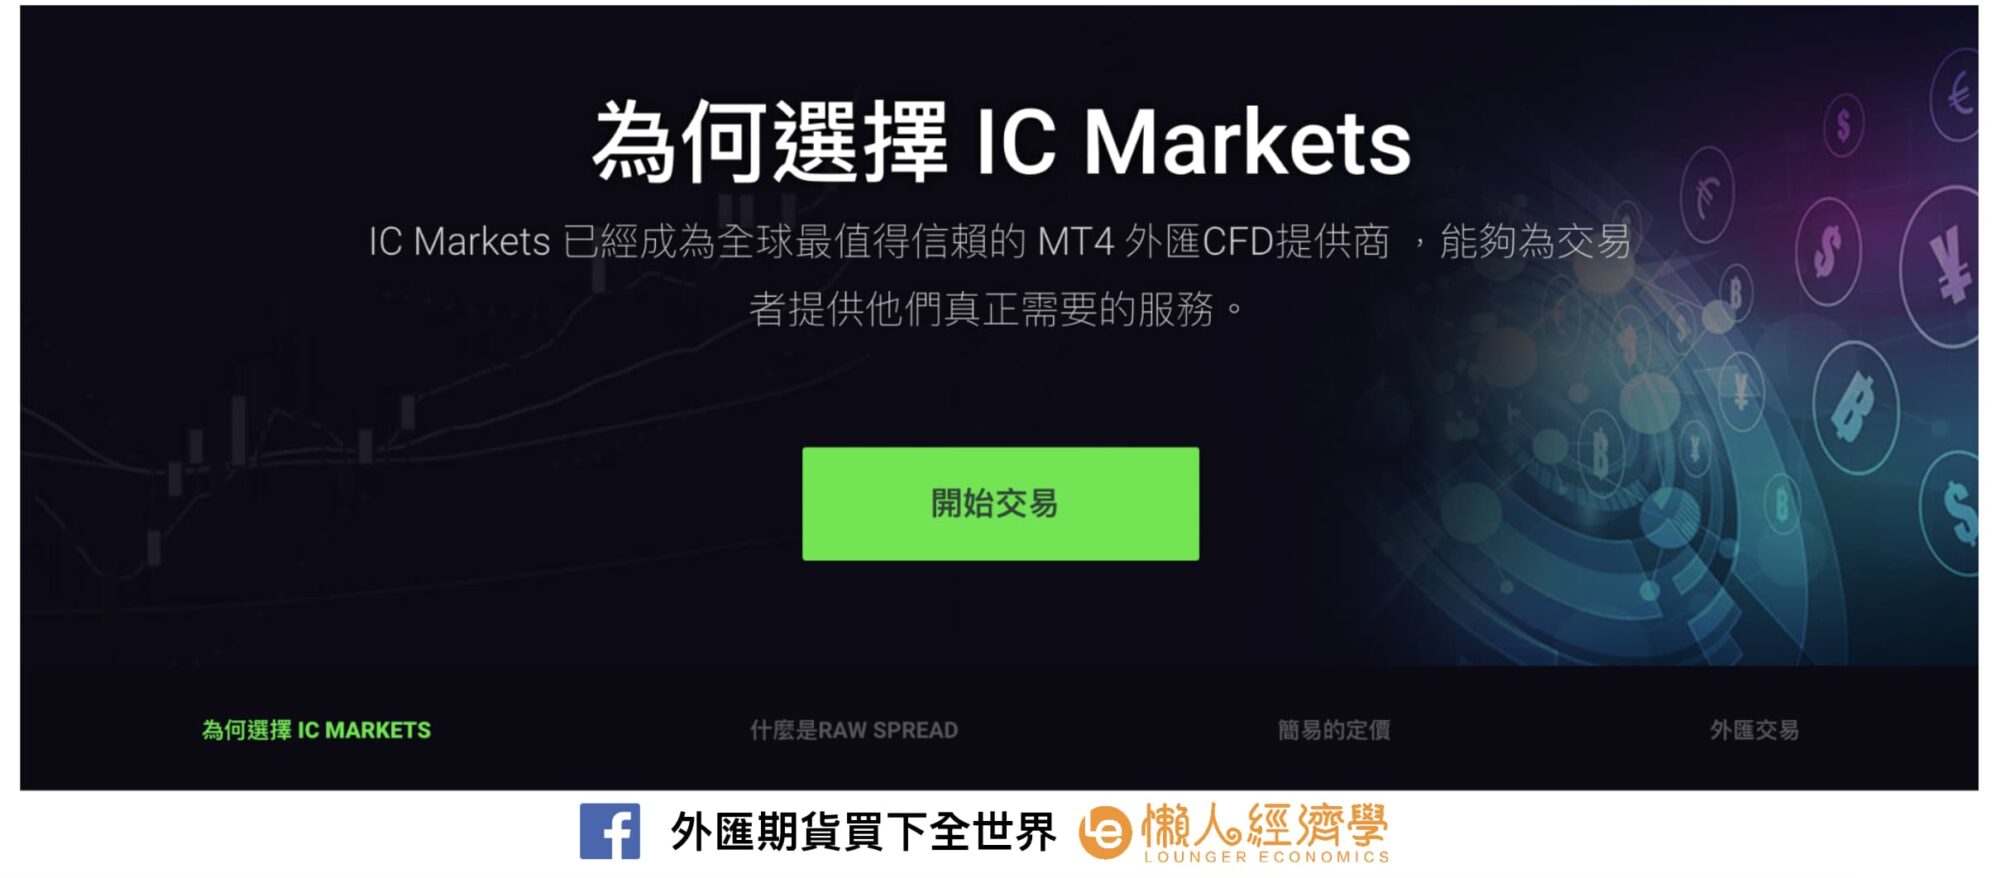 IC Markets 與其他外匯平台比較